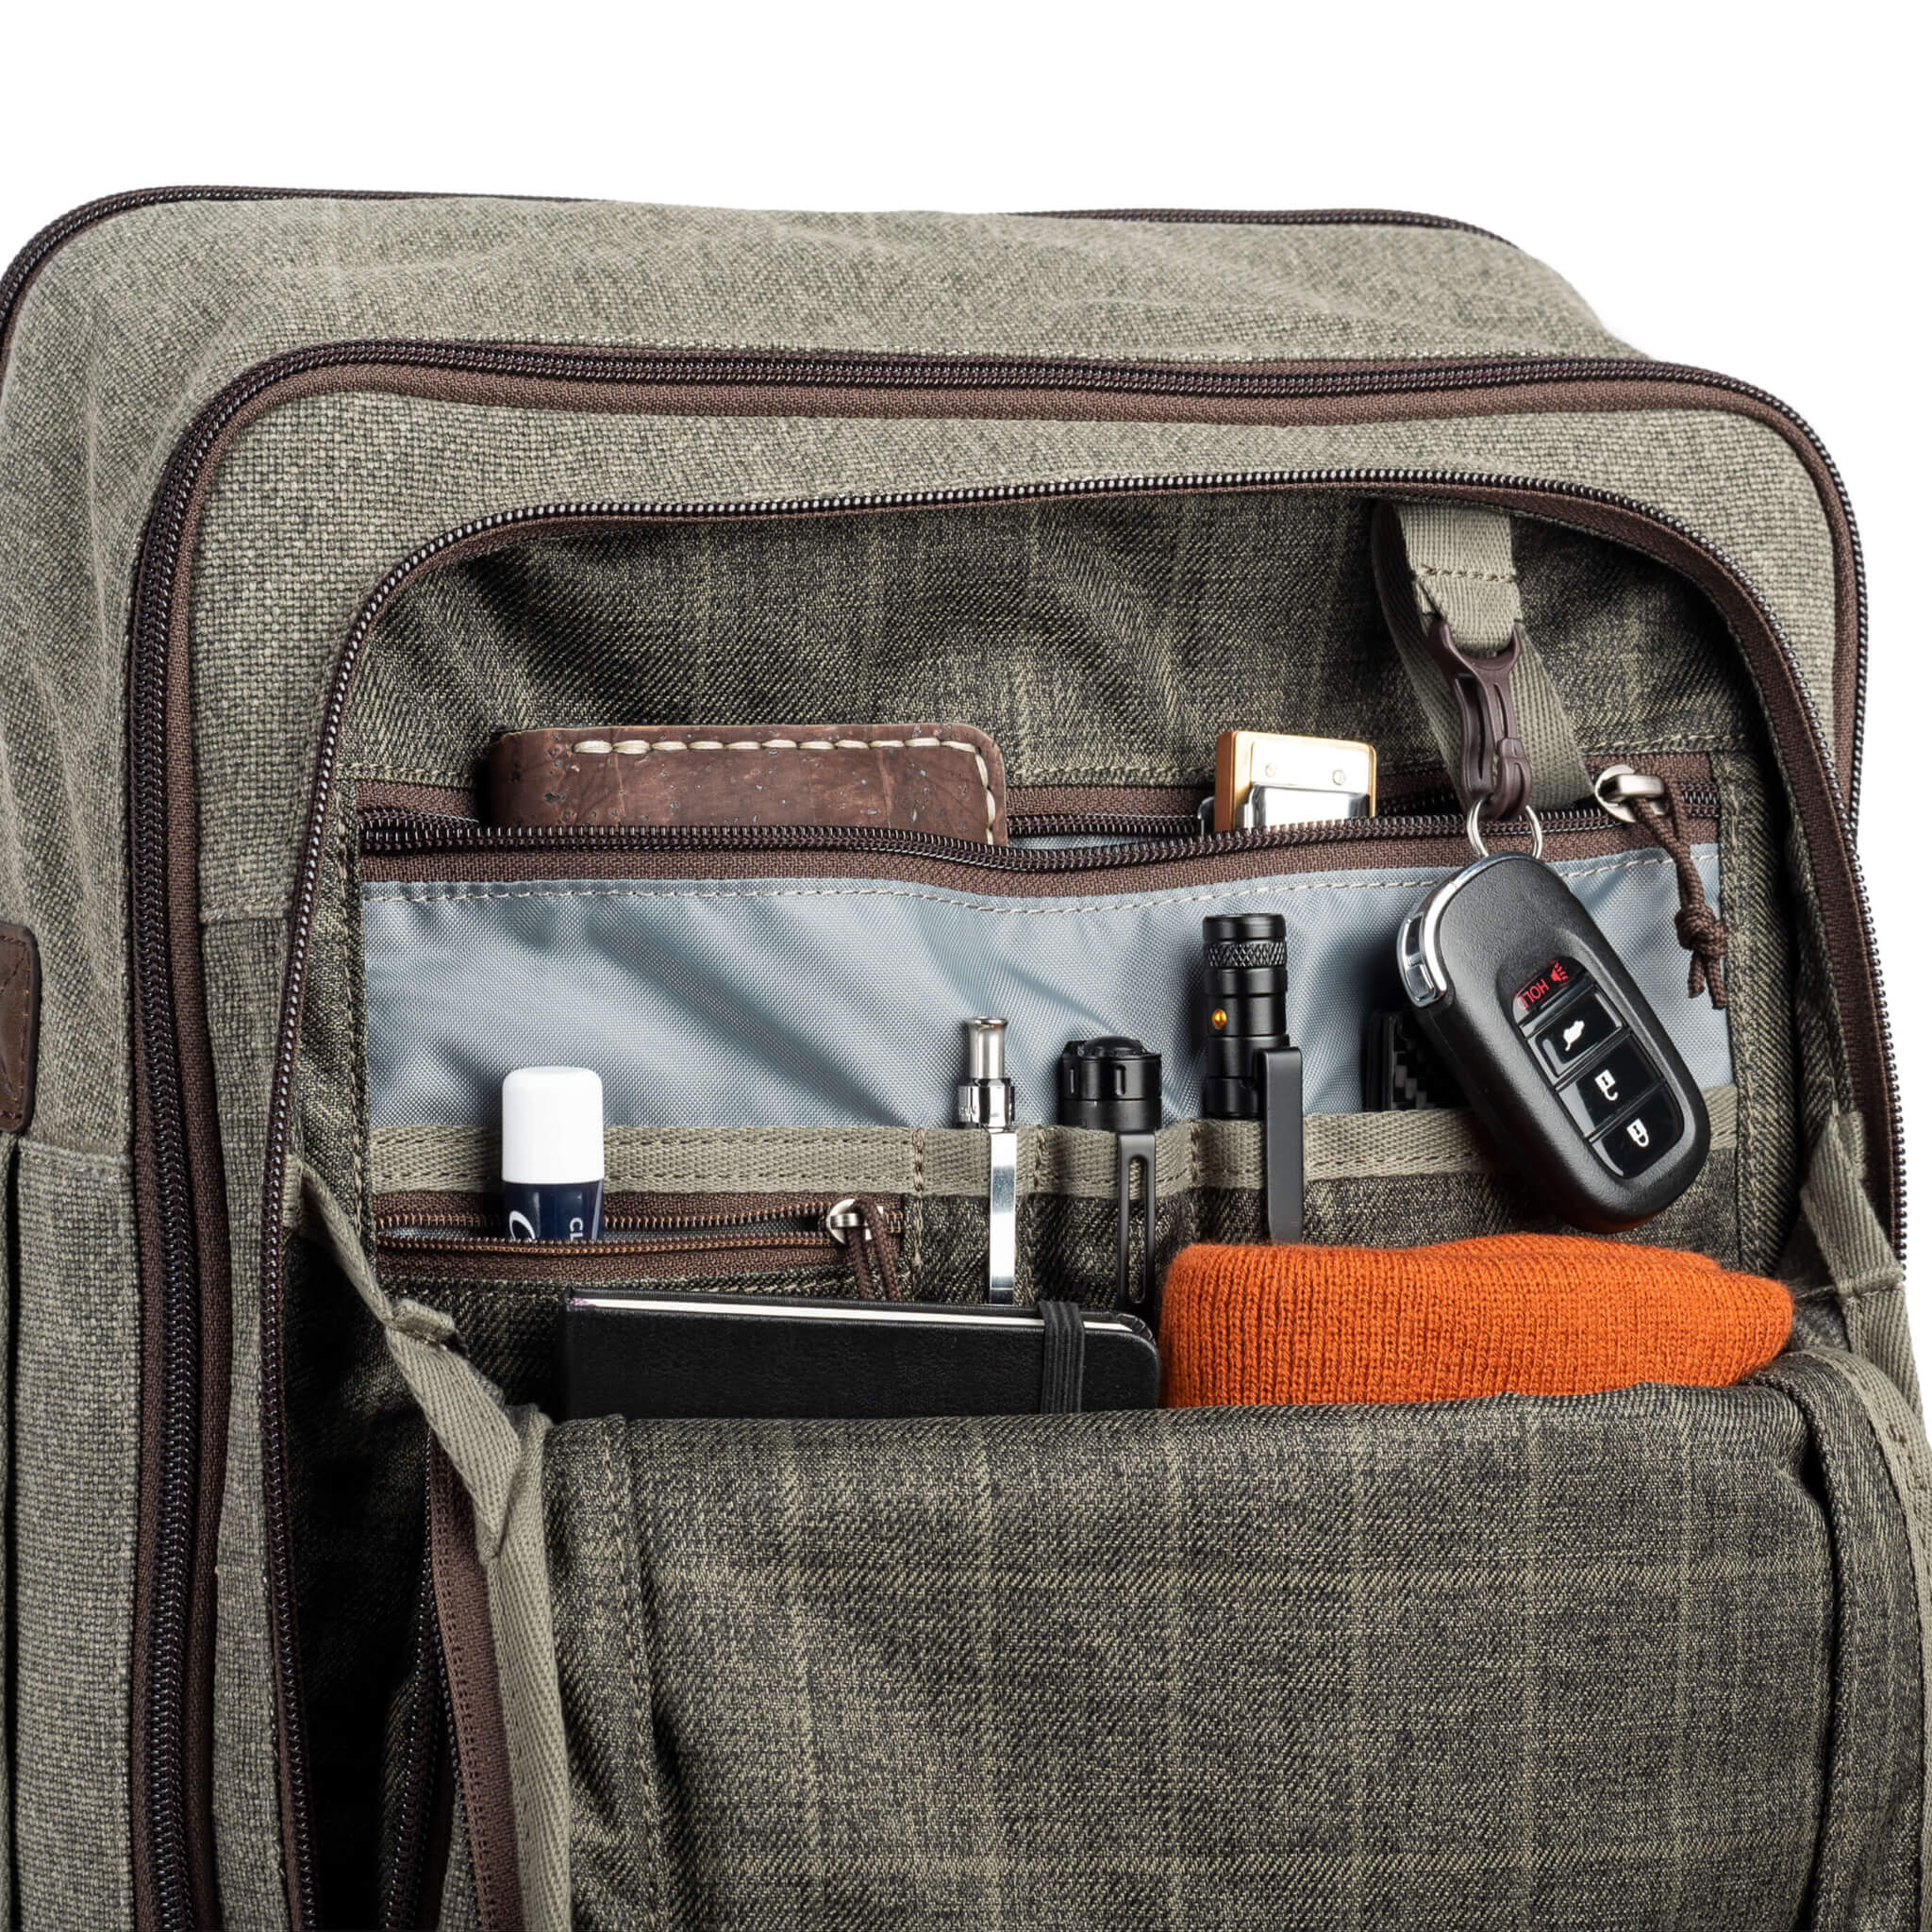 Add Exterior Pockets to the Handbag Organizer 